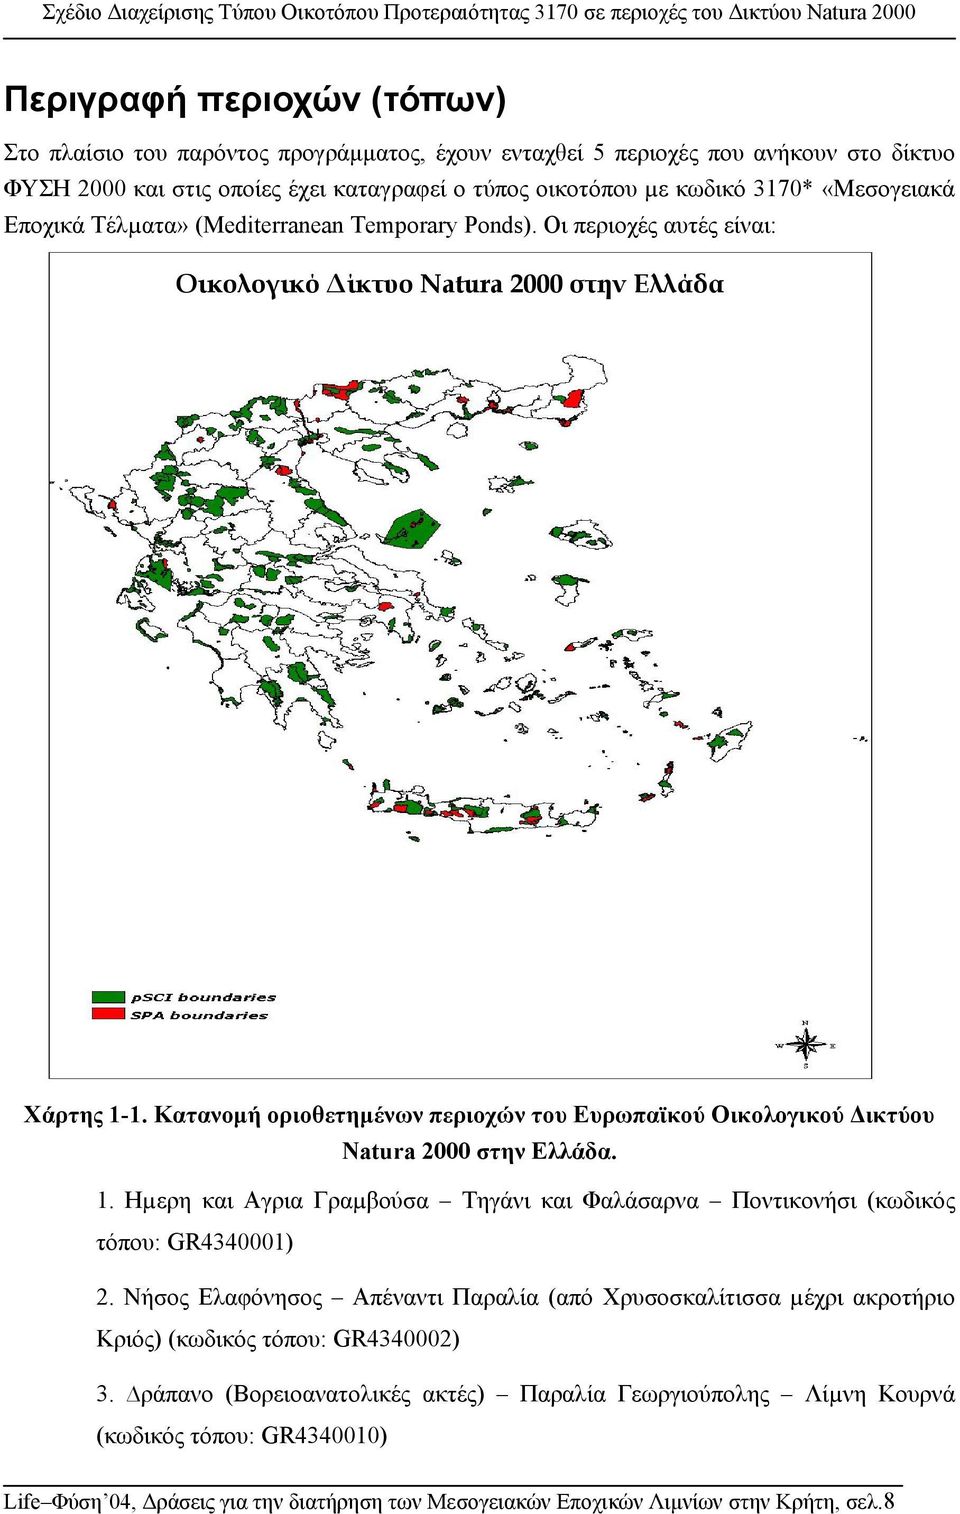 Κατανοµή οριοθετηµένων περιοχών του Ευρωπαϊκού Οικολογικού ικτύου Natura 2000 στην Ελλάδα. 1. Ηµερη και Αγρια Γραµβούσα Τηγάνι και Φαλάσαρνα Ποντικονήσι (κωδικός τόπου: GR4340001) 2.